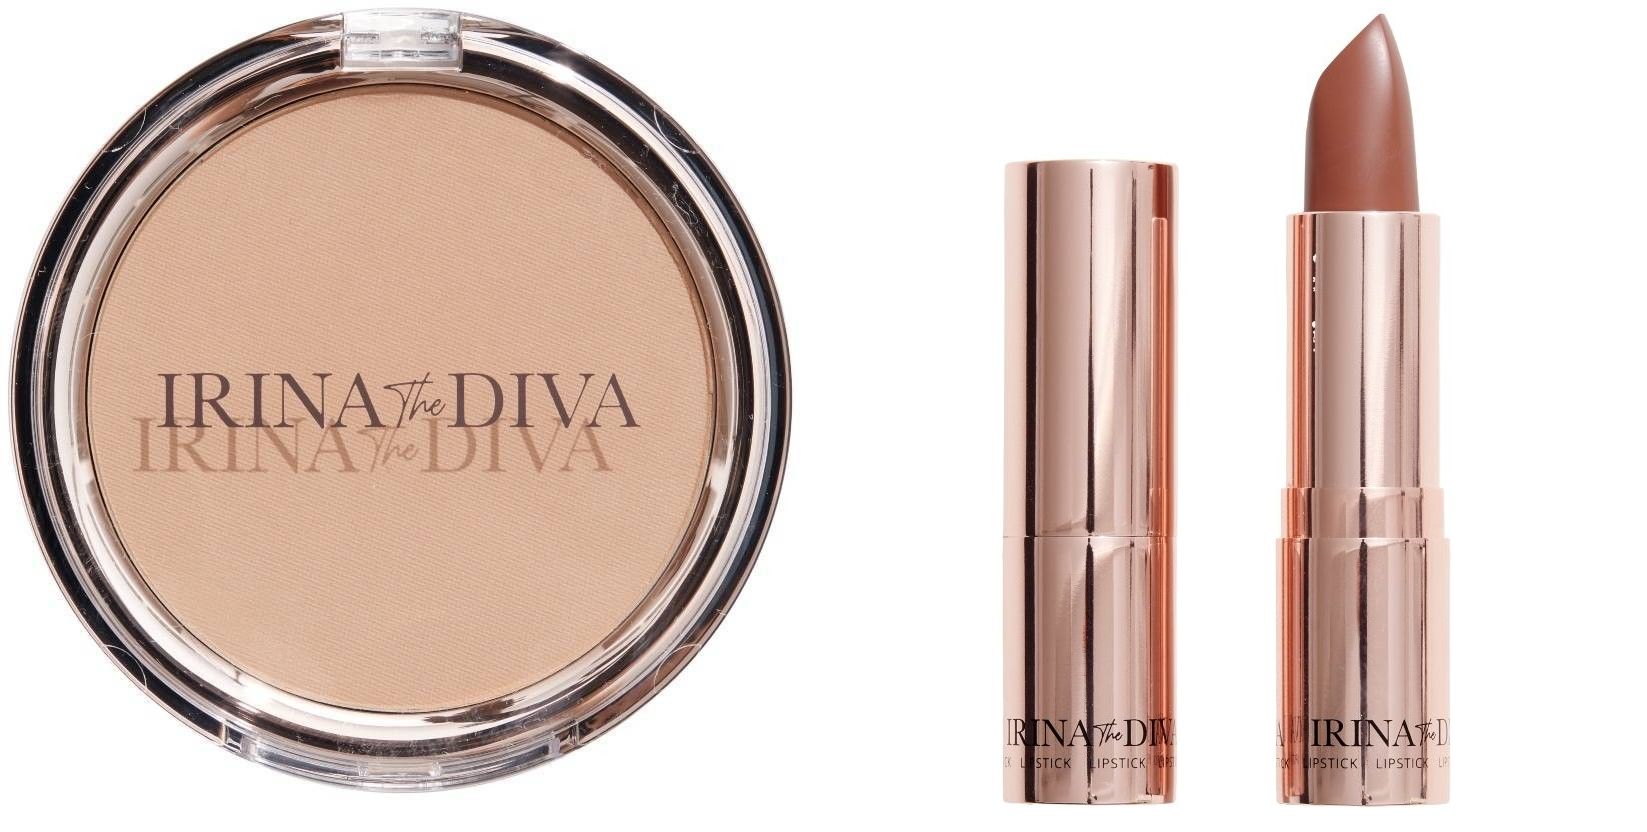 Irina The Diva - Lipstick  003 BEAUTY BOSS + Filter Matte Bronzing Powder  Natural Beauty 001